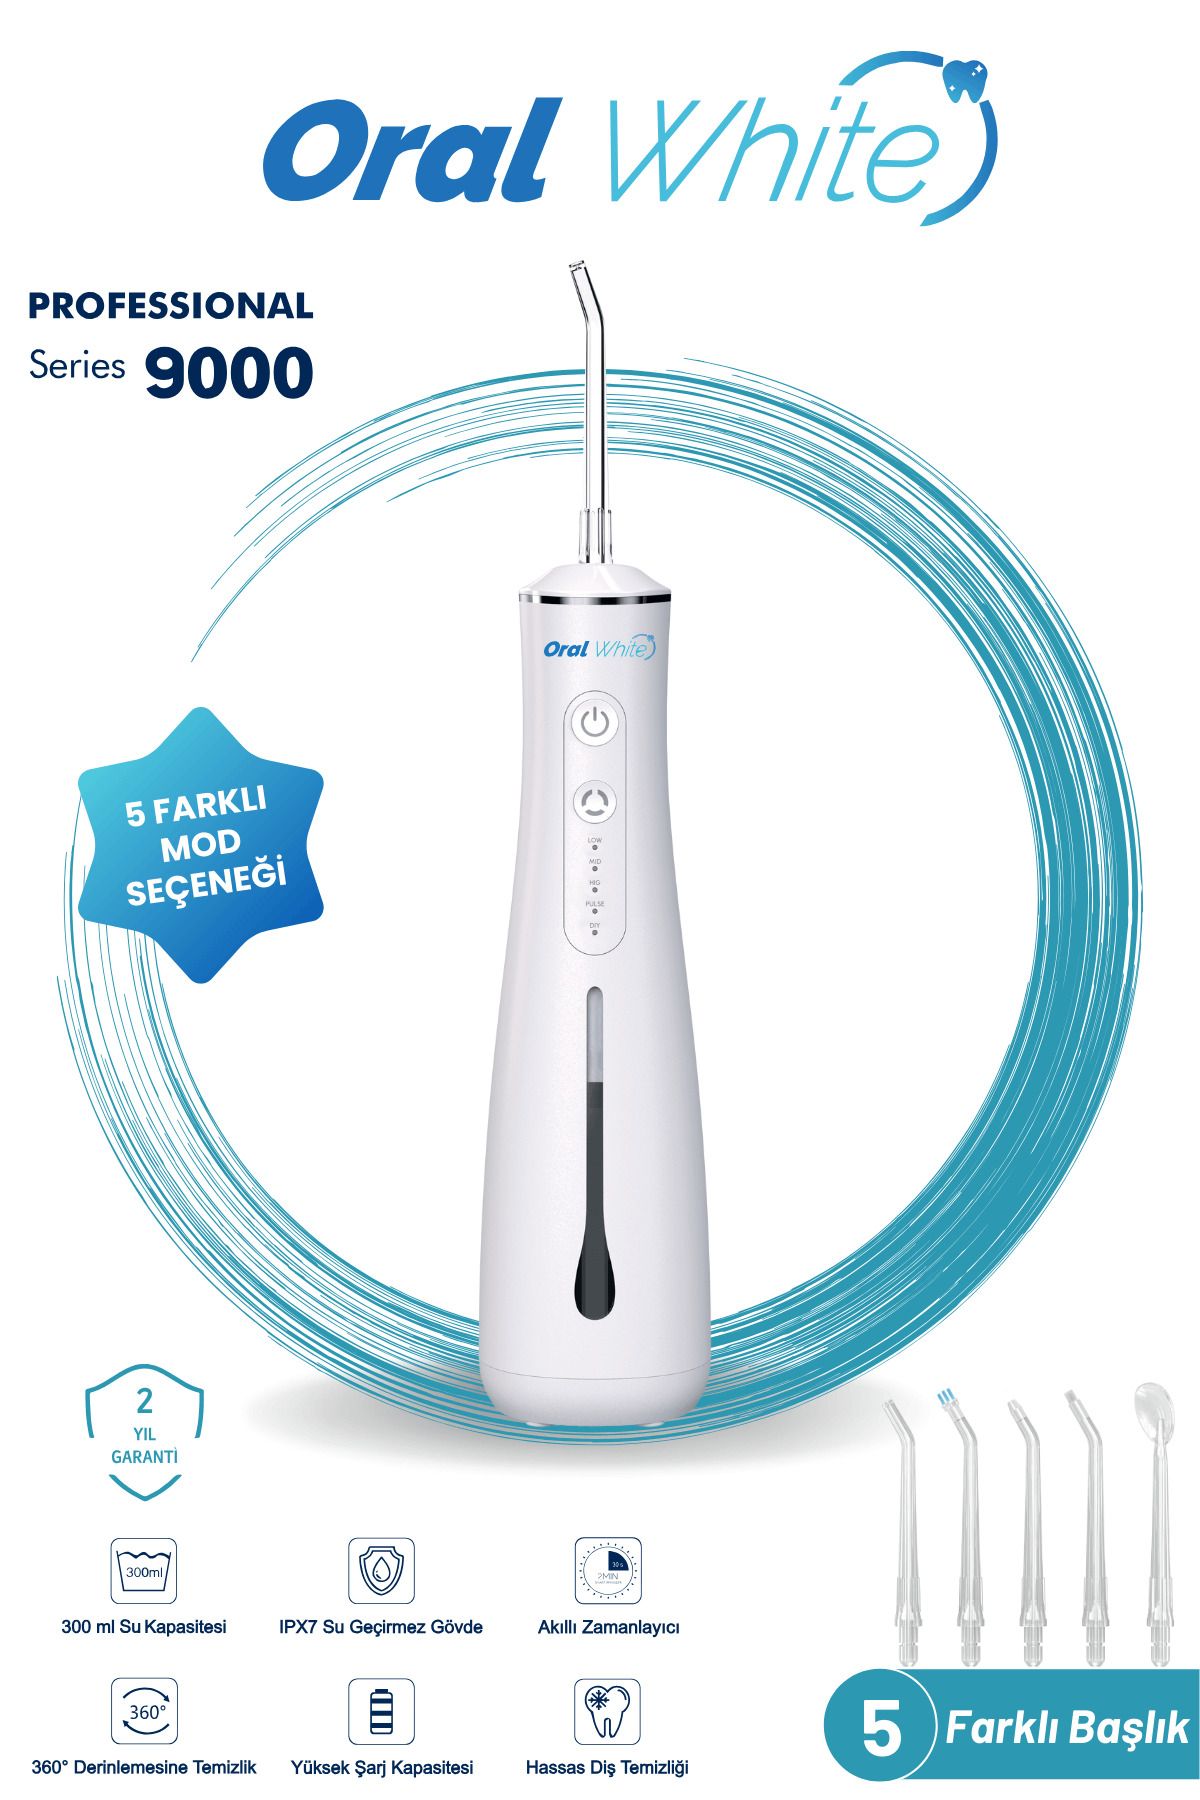 Oral White Professional Series 9000 Şarjlı Ağız Duşu 5 Başlıklı